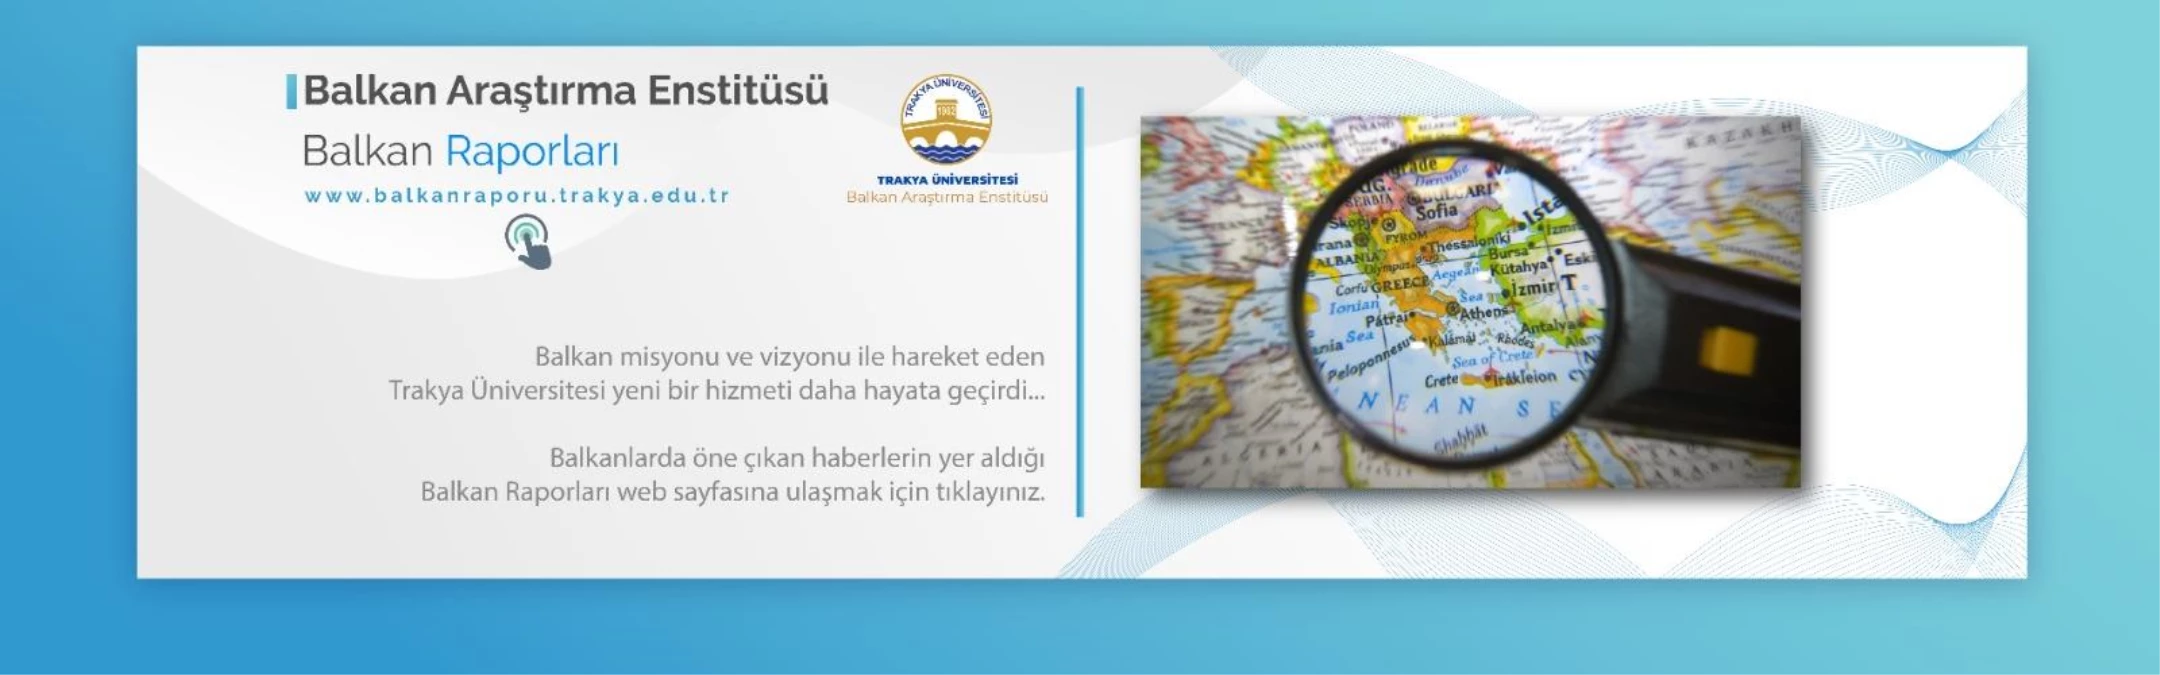 Trakya Üniversitesi, Balkanlardaki gelişmeleri "Balkan Raporu" projesiyle Türkçe duyuracak